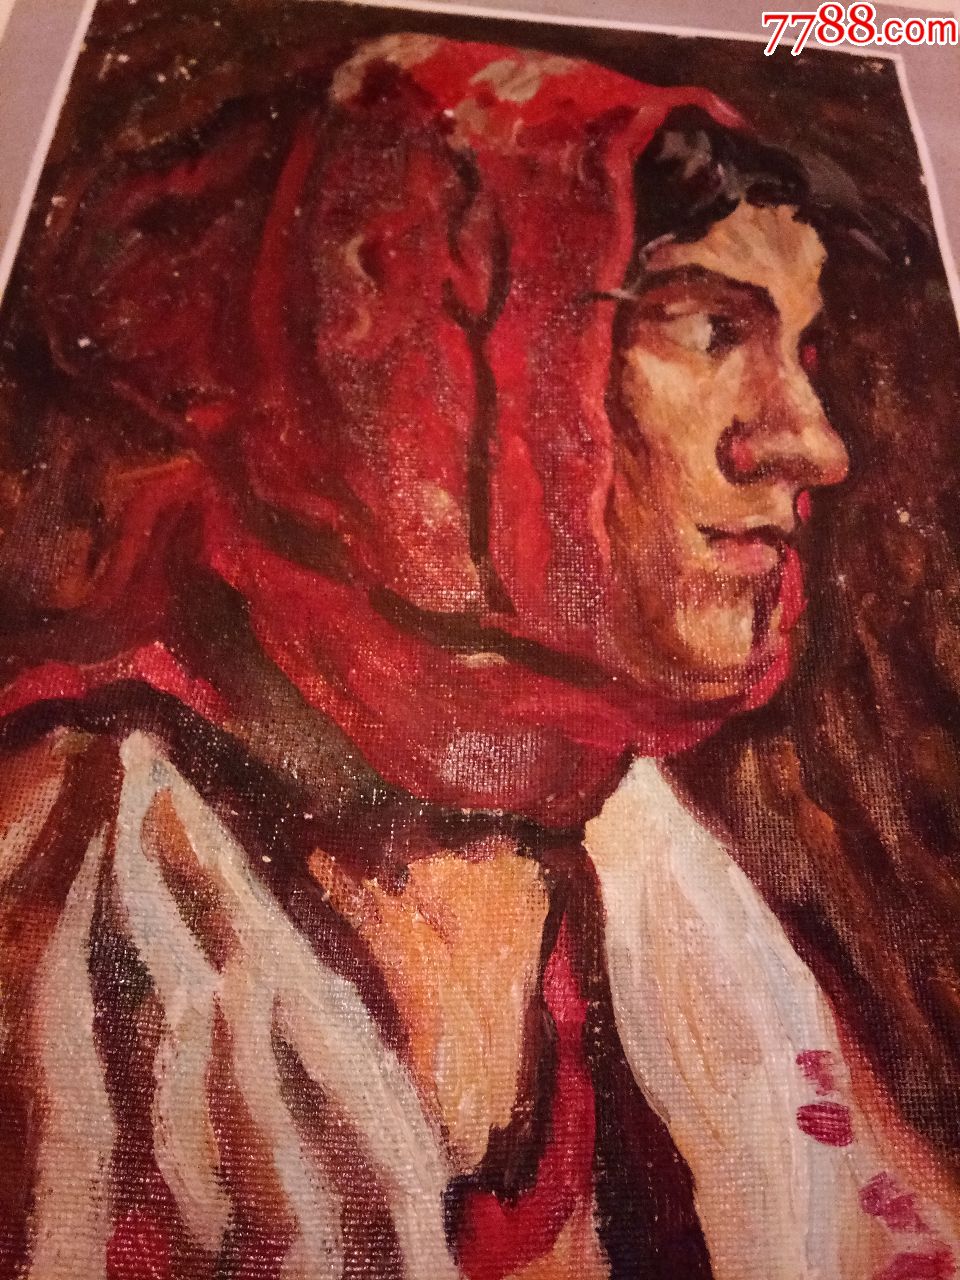 围红头巾的女青年油画【19884临】【长27cm宽19cm】